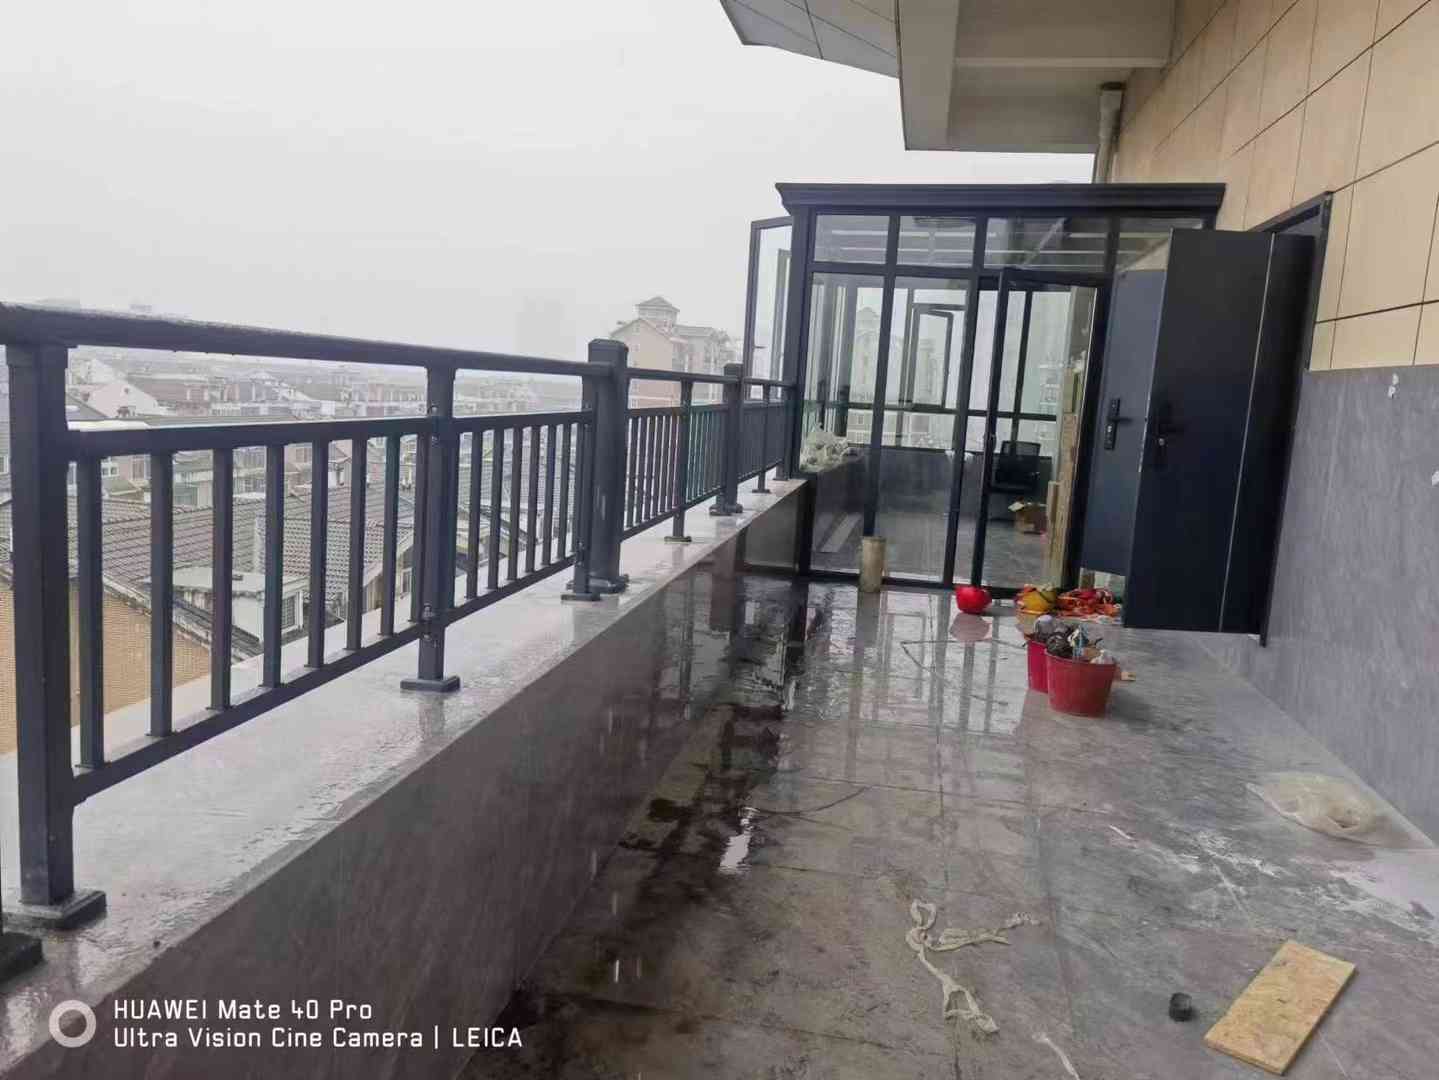 凰轩门窗为江陵某业主安装铝艺阳台护栏杆